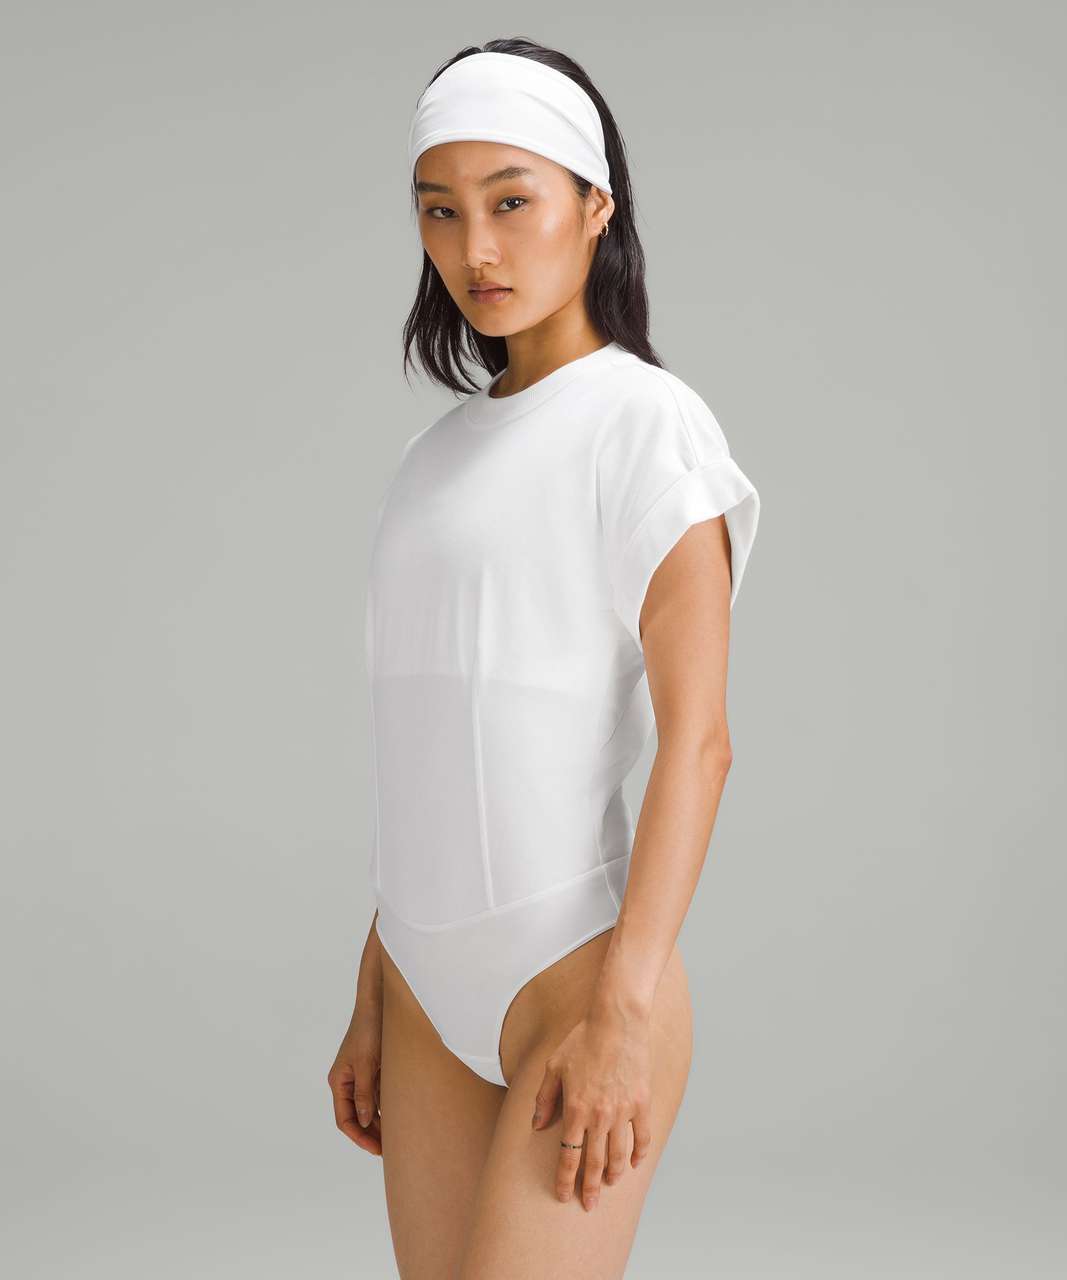 Bodysuit - White cotton bodysuit